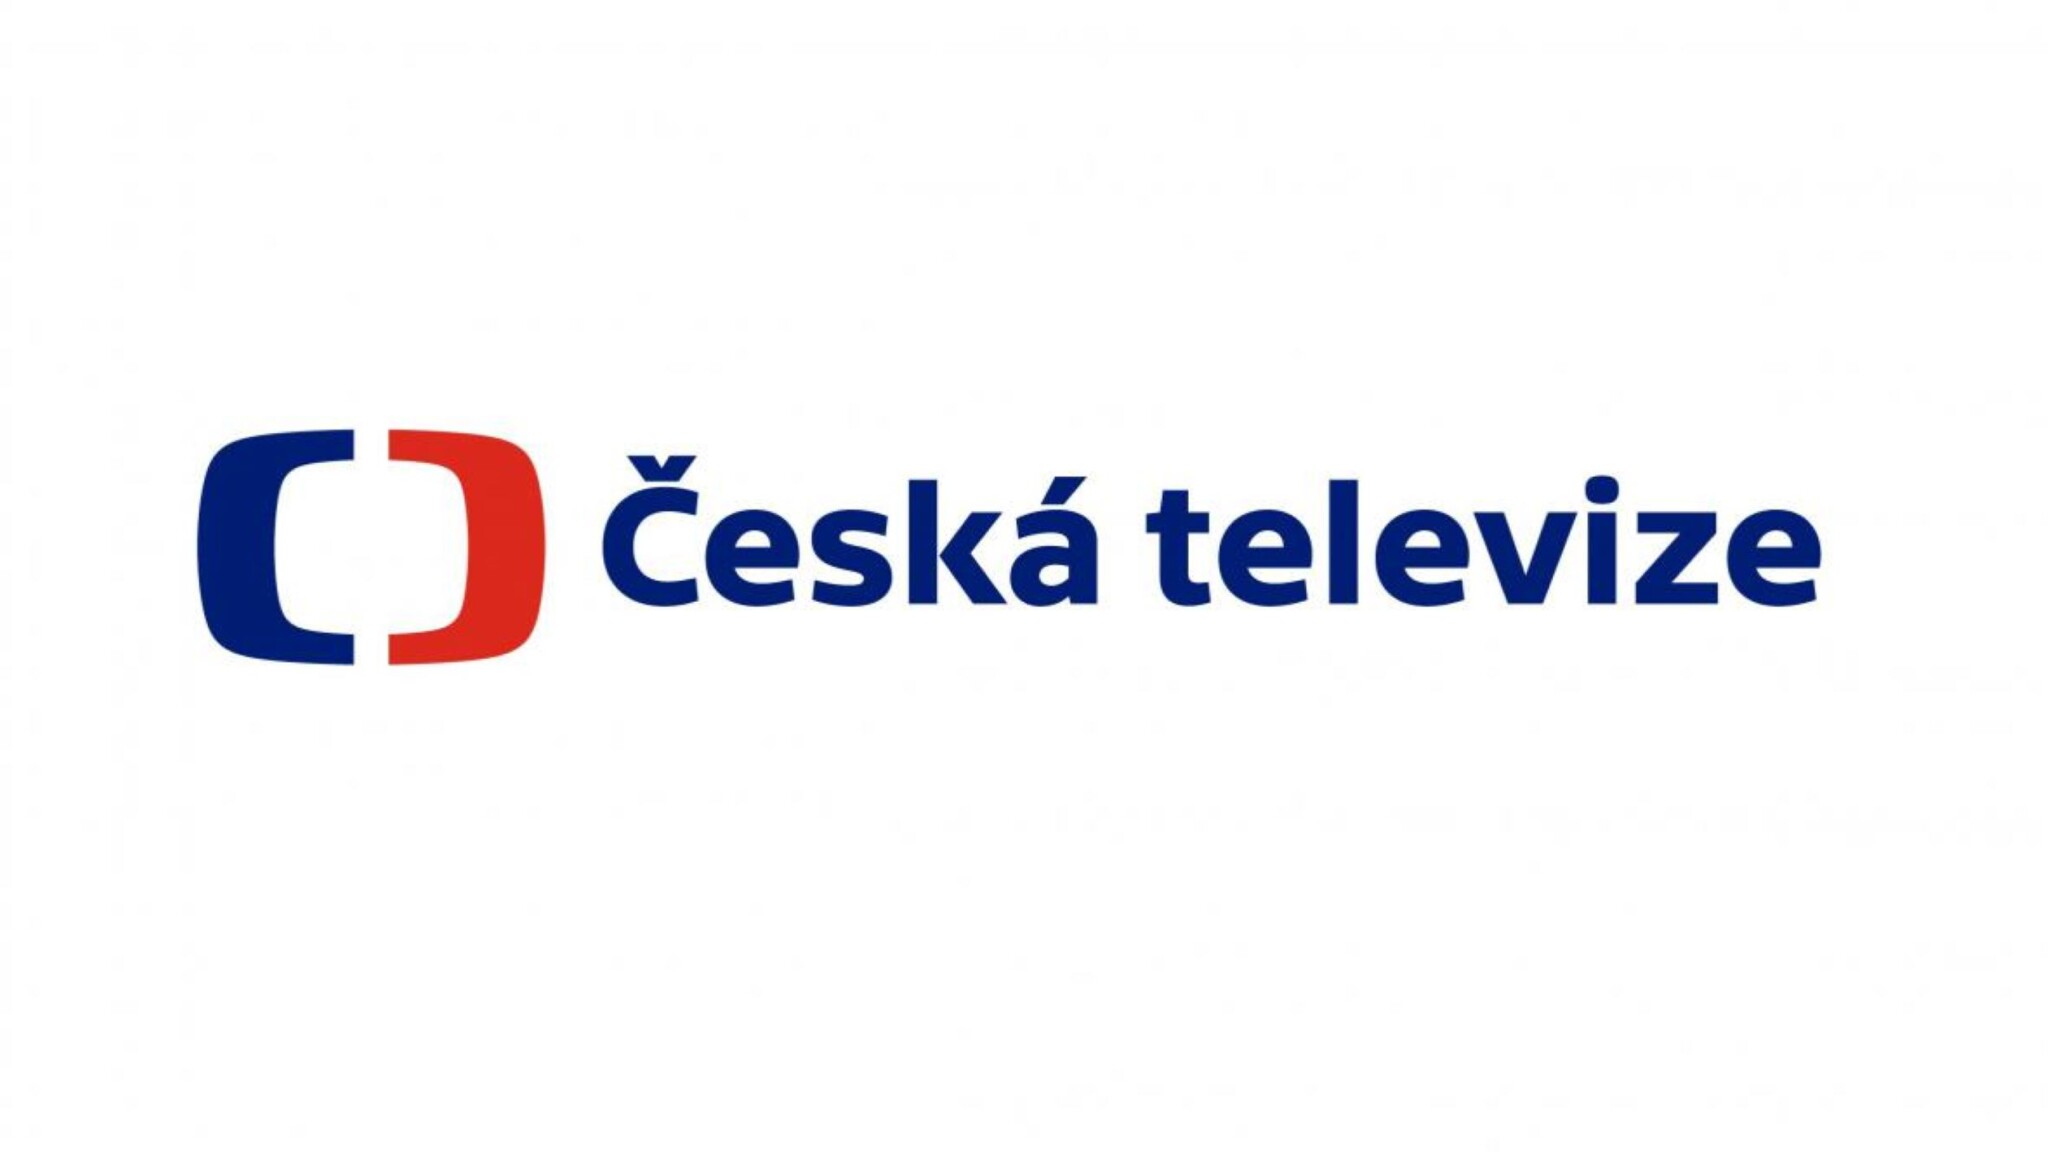 Ředitel České televize Dvořák podal trestní oznámení na radní Lipovskou